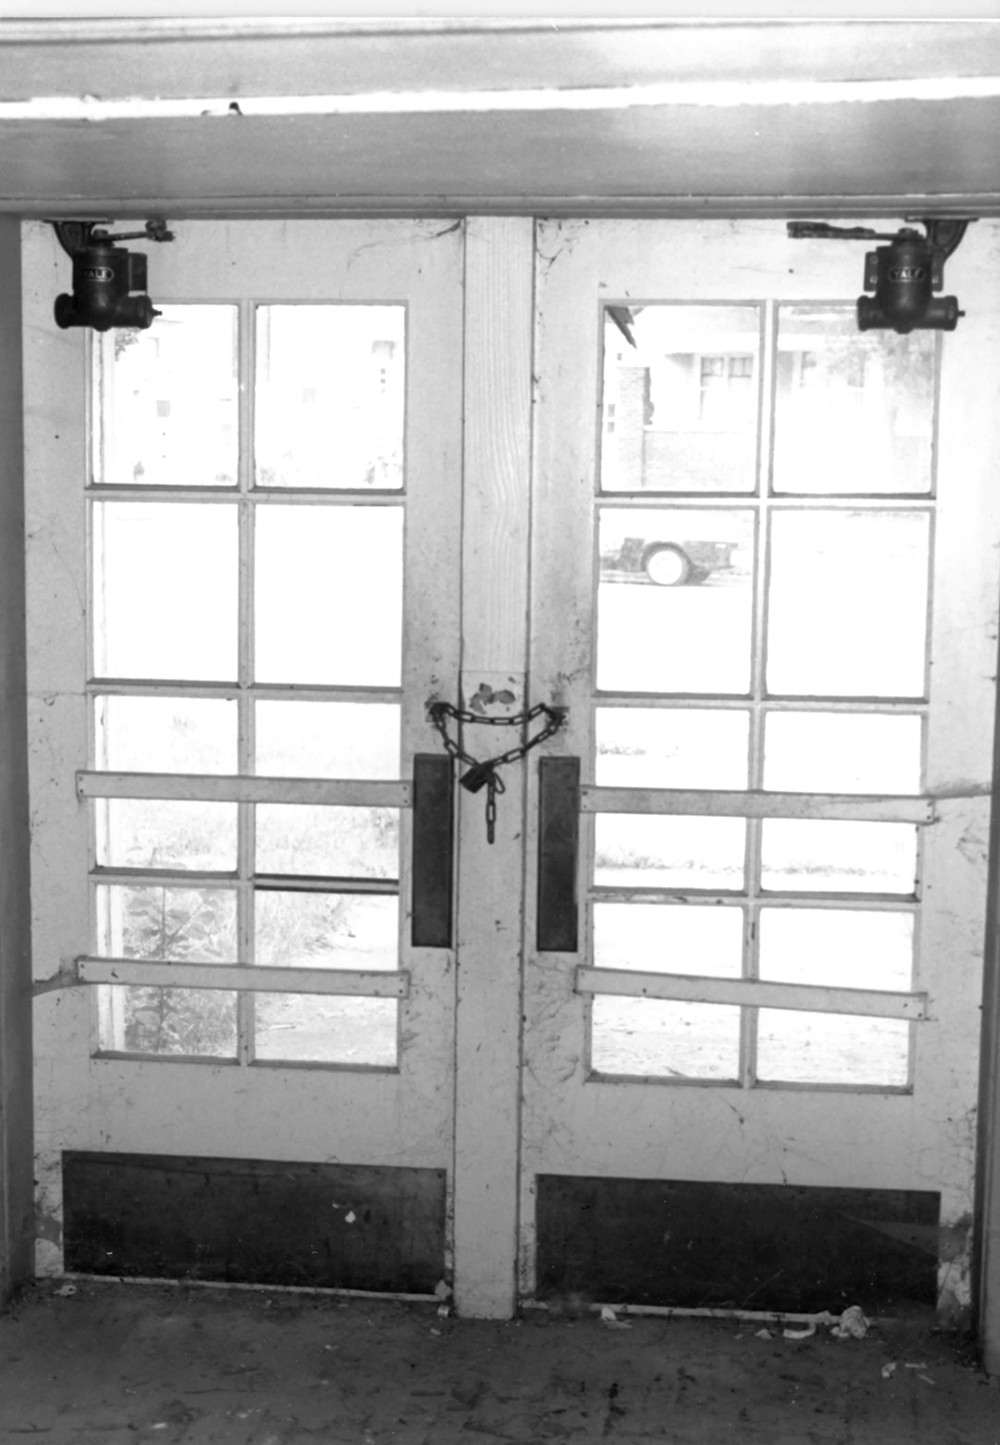 Edgerton Public Grade Schools, Edgerton Wisconsin Building 1. North entry door detail (1986)